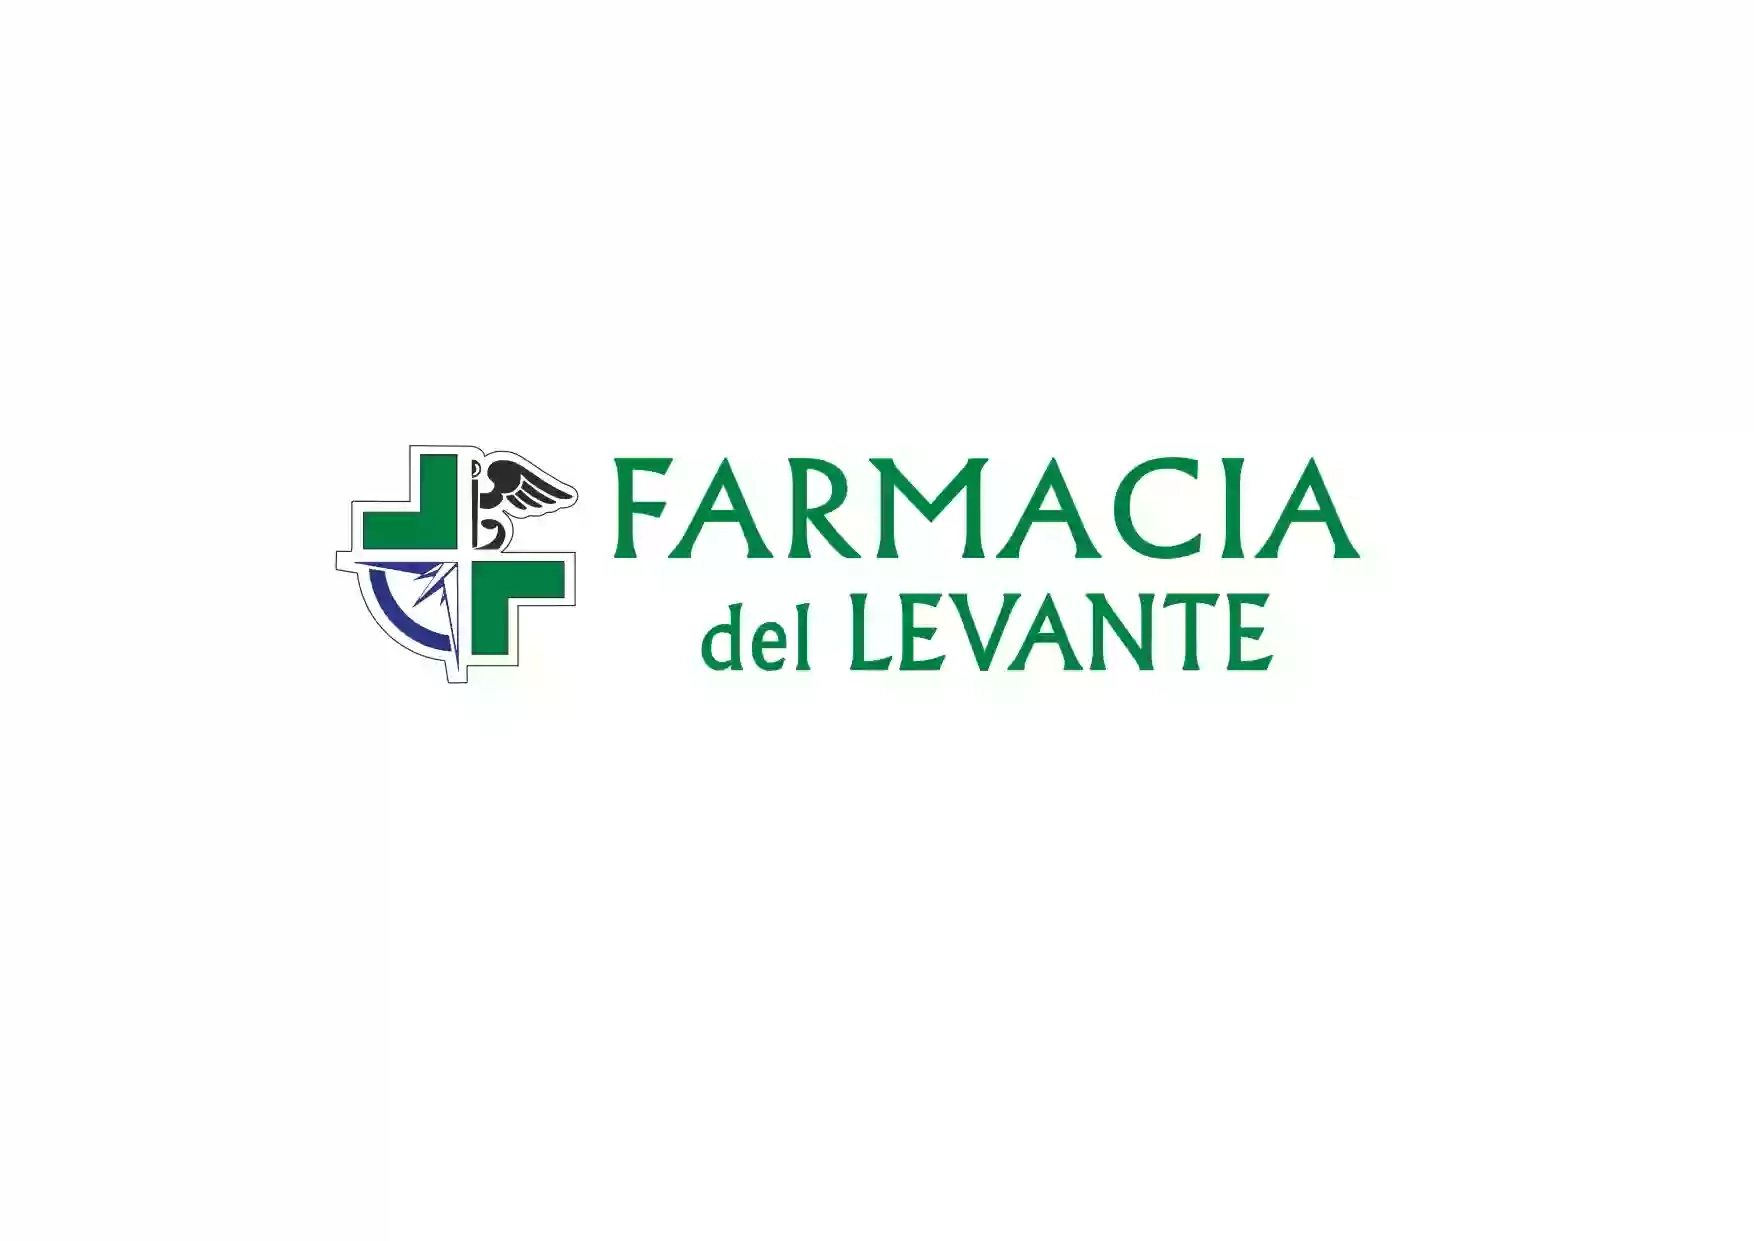 Farmacia Del Levante - Cosmetica Fitoterapia Veterinaria